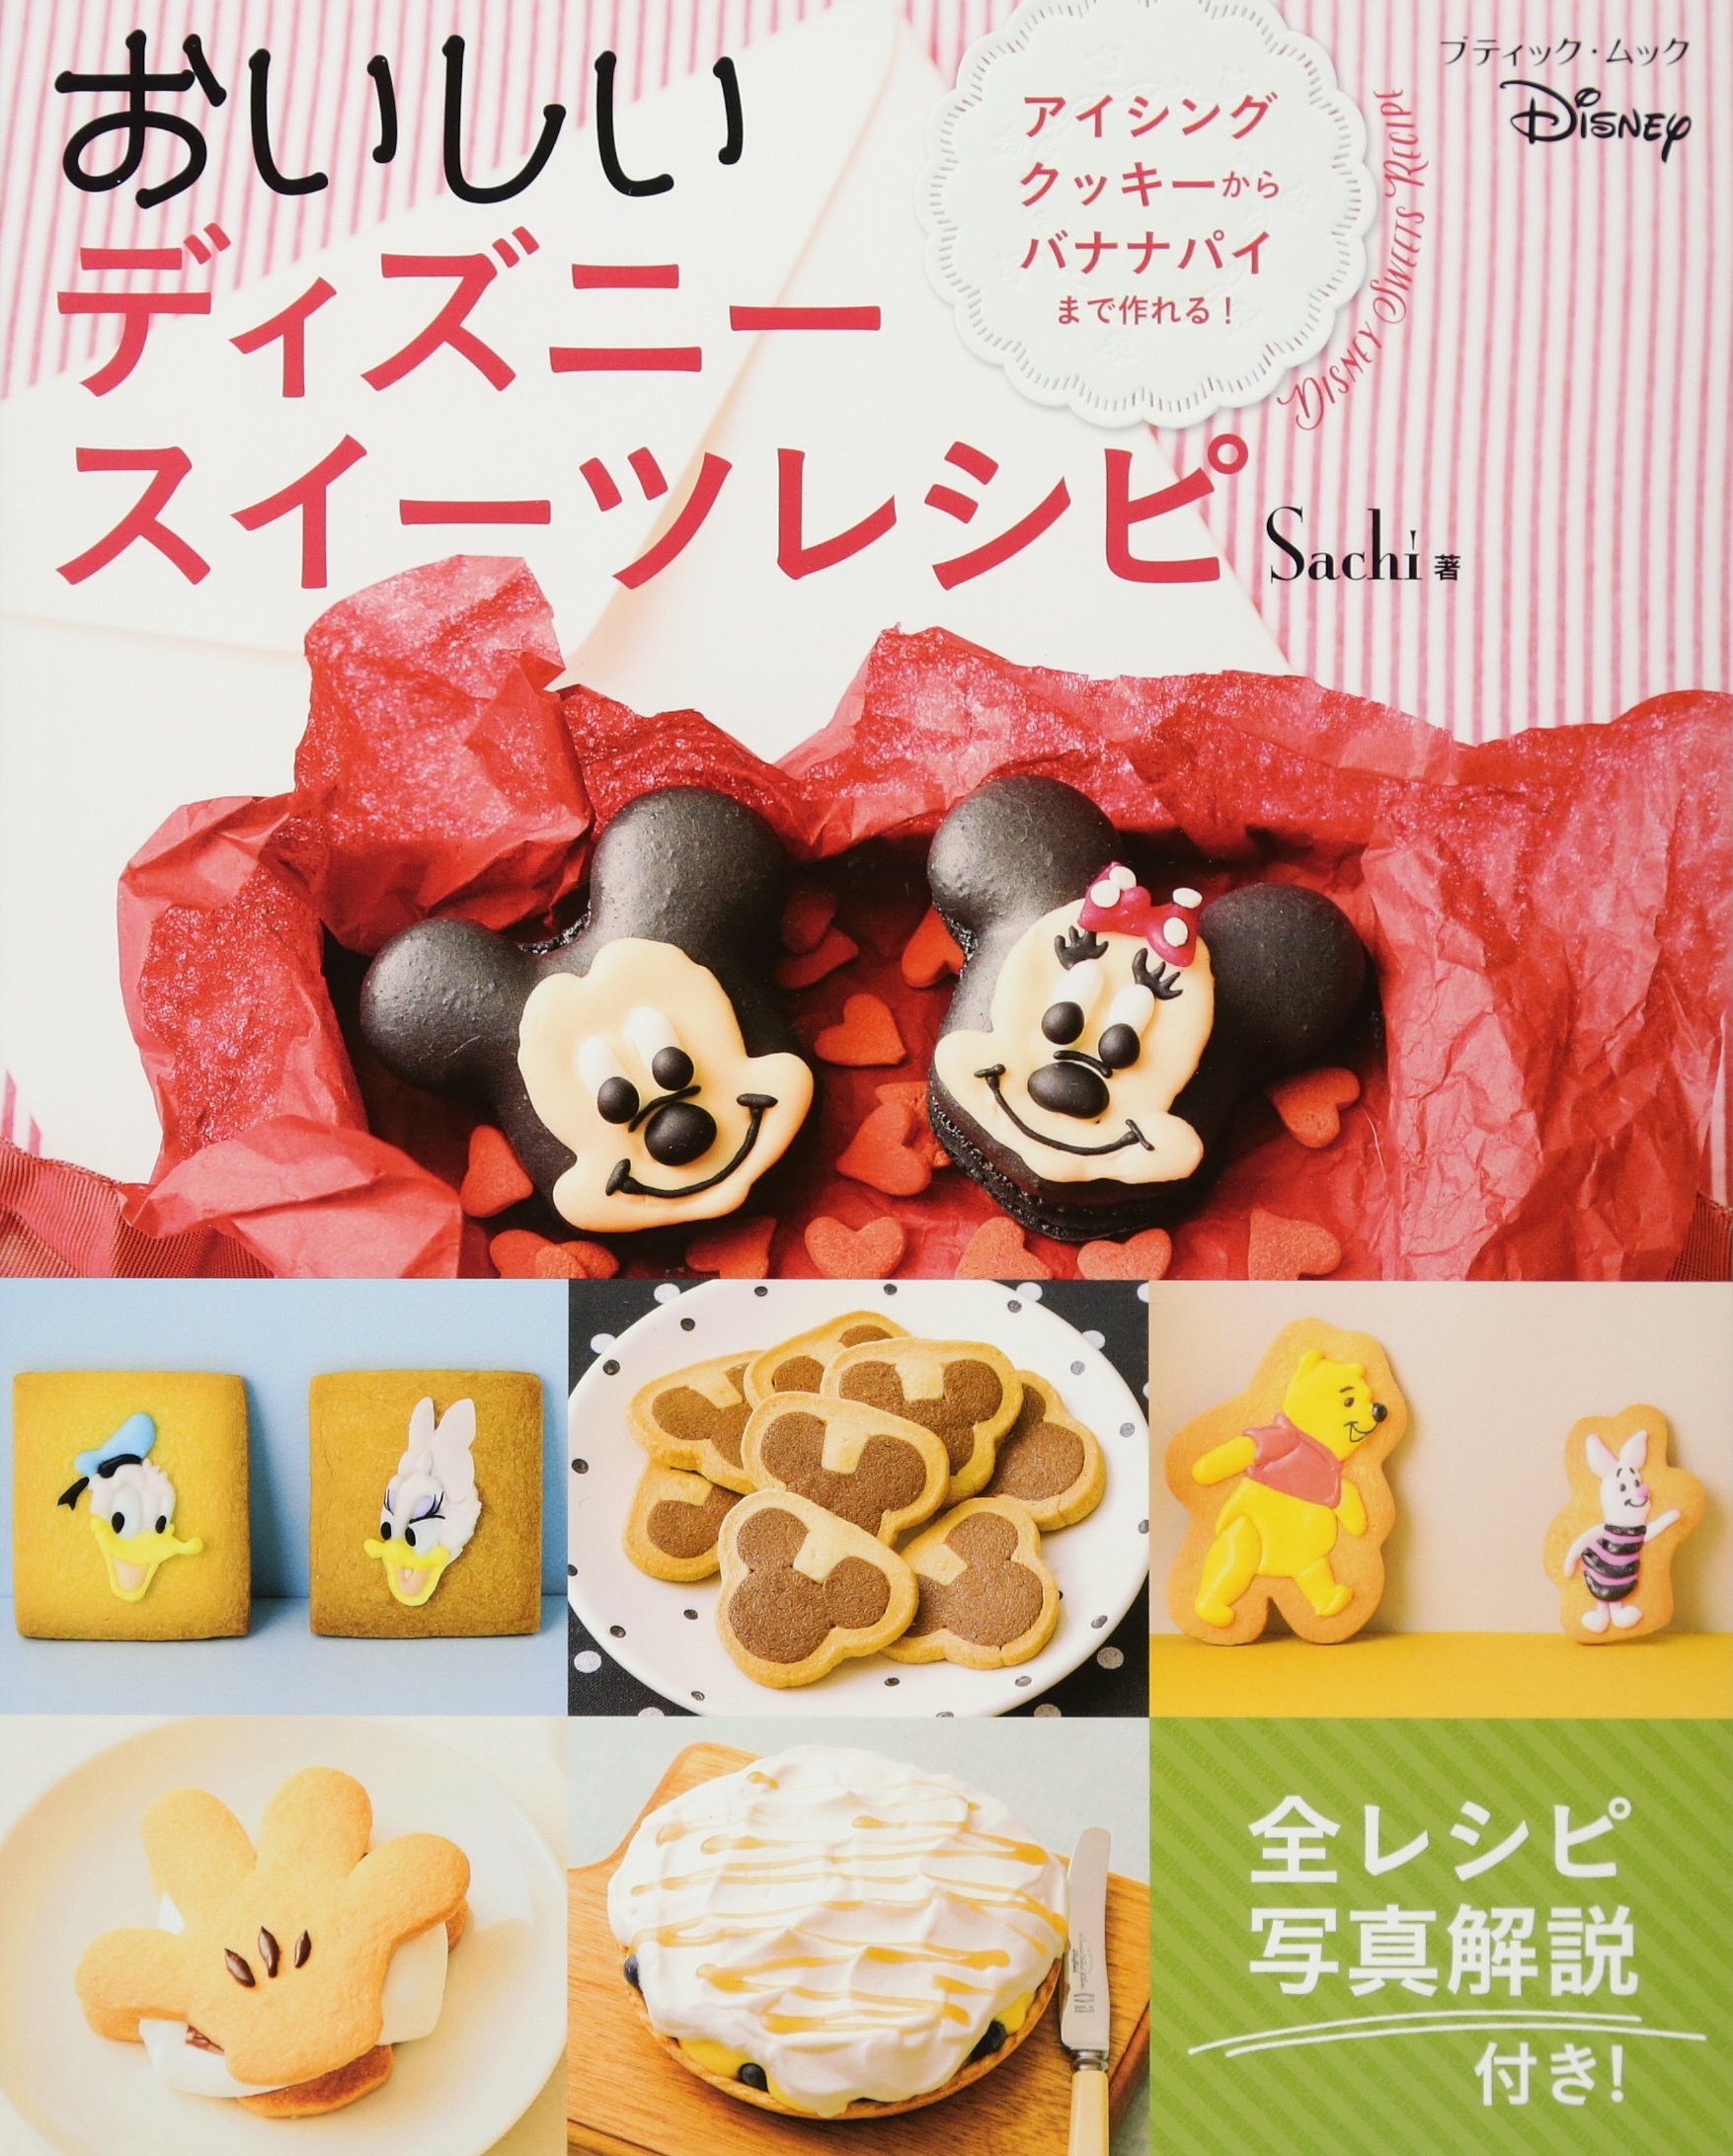 簡単にできる キャラスイーツ レシピを紹介 ツムツムチョコレートカバードクッキー Moshi Moshi Nippon もしもしにっぽん